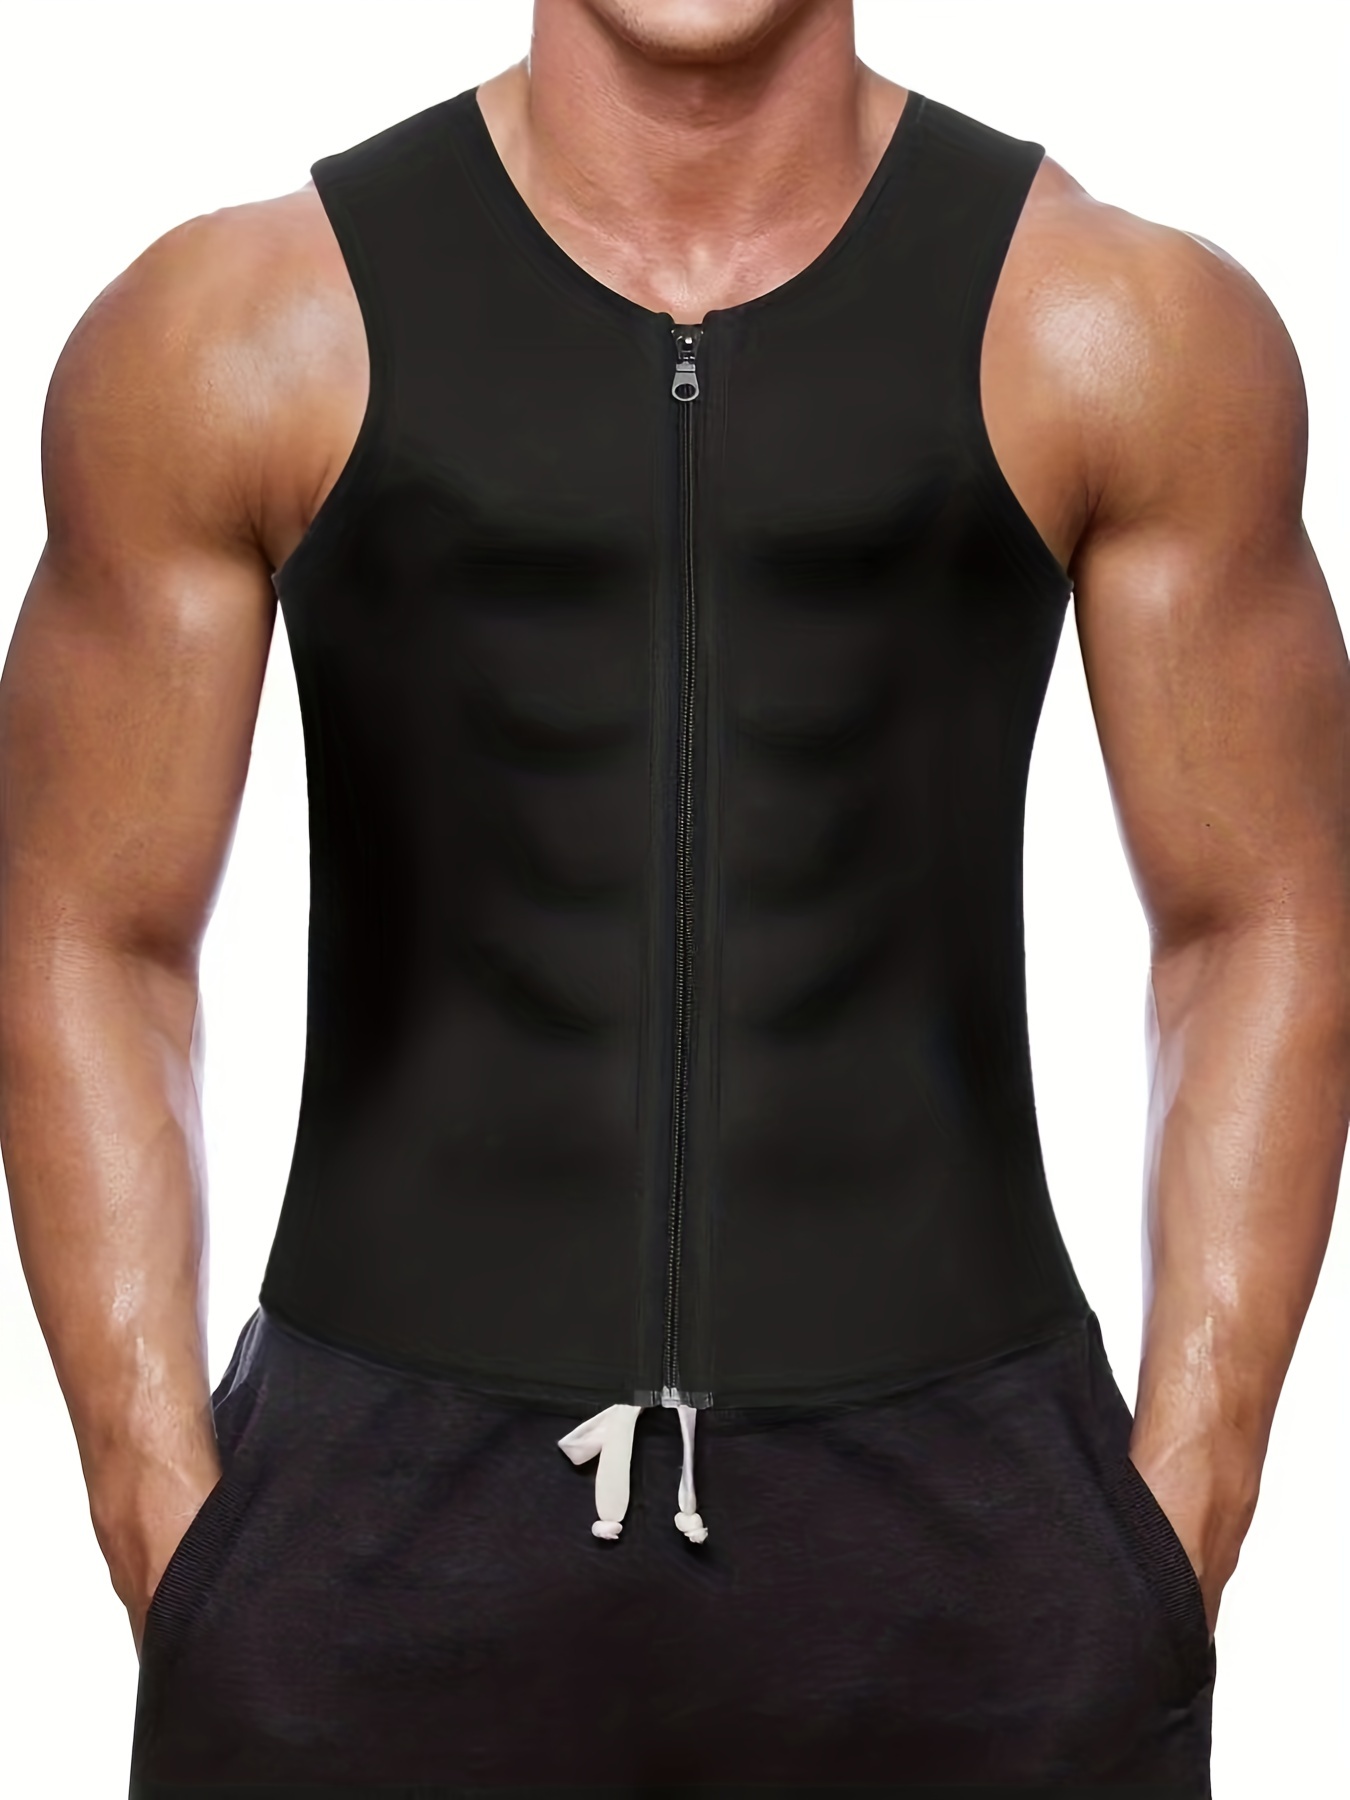 Men's Neoprene Sweat Sauna Vest Body Shaper Waist Trainer Slimming  Shapewear US 